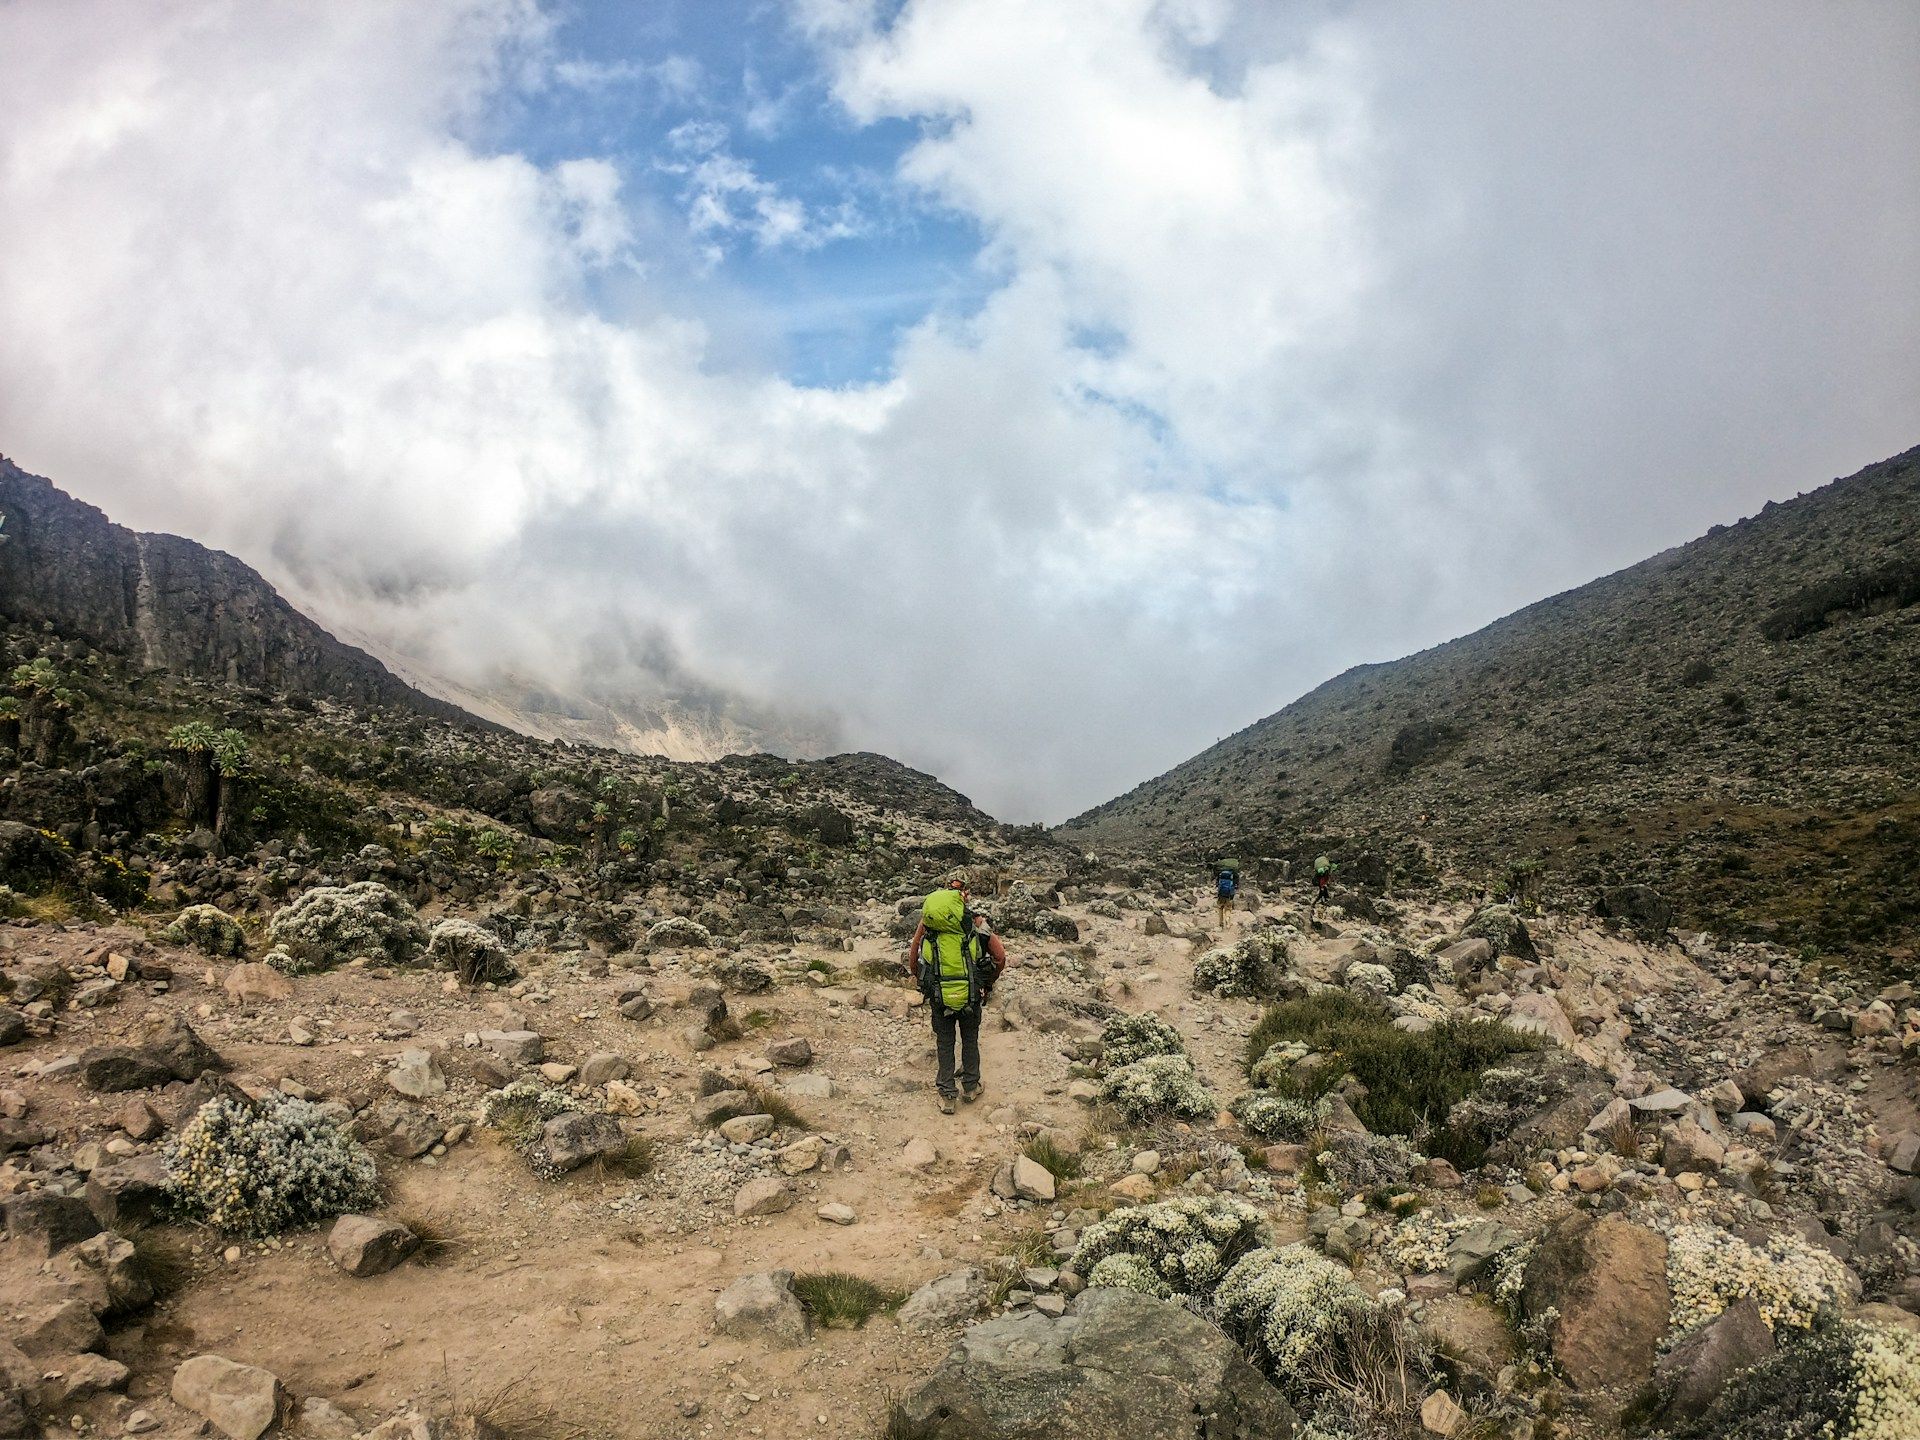 Camping on Mount Kilimanjaro